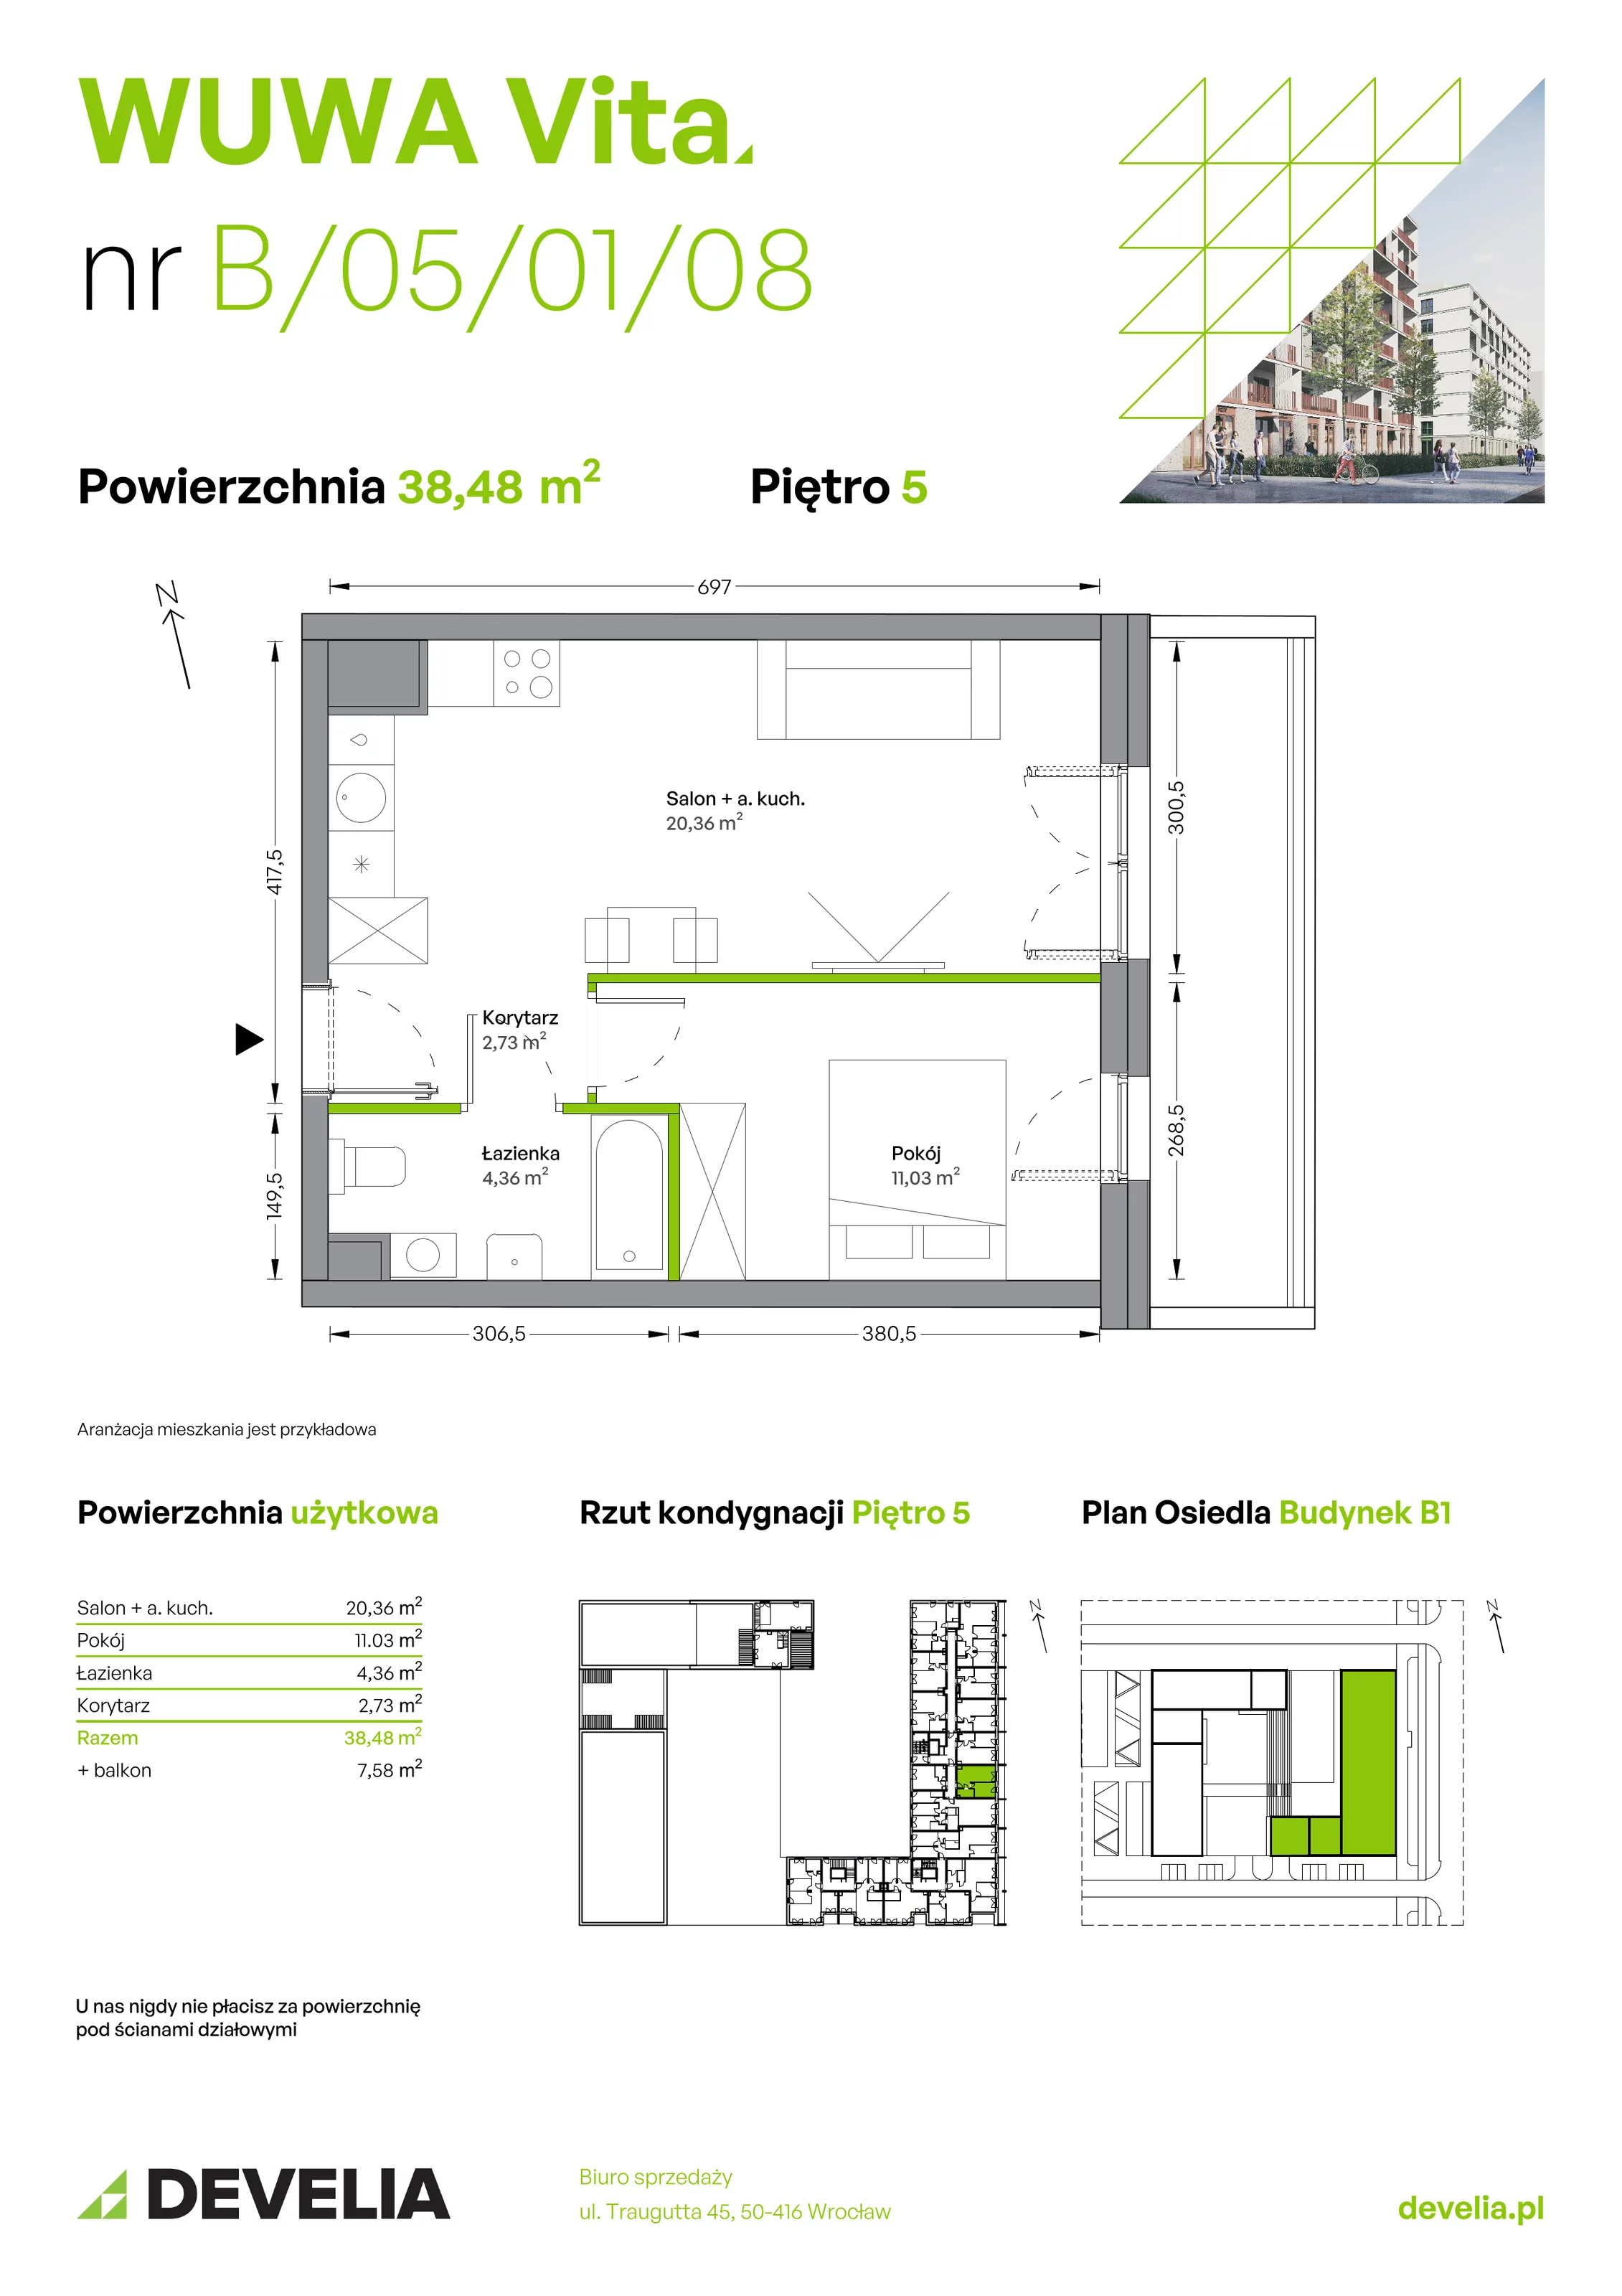 Mieszkanie 38,48 m², piętro 5, oferta nr B.05.01.08, WUWA Vita, Wrocław, Żerniki, Fabryczna, ul. Tadeusza Brzozy